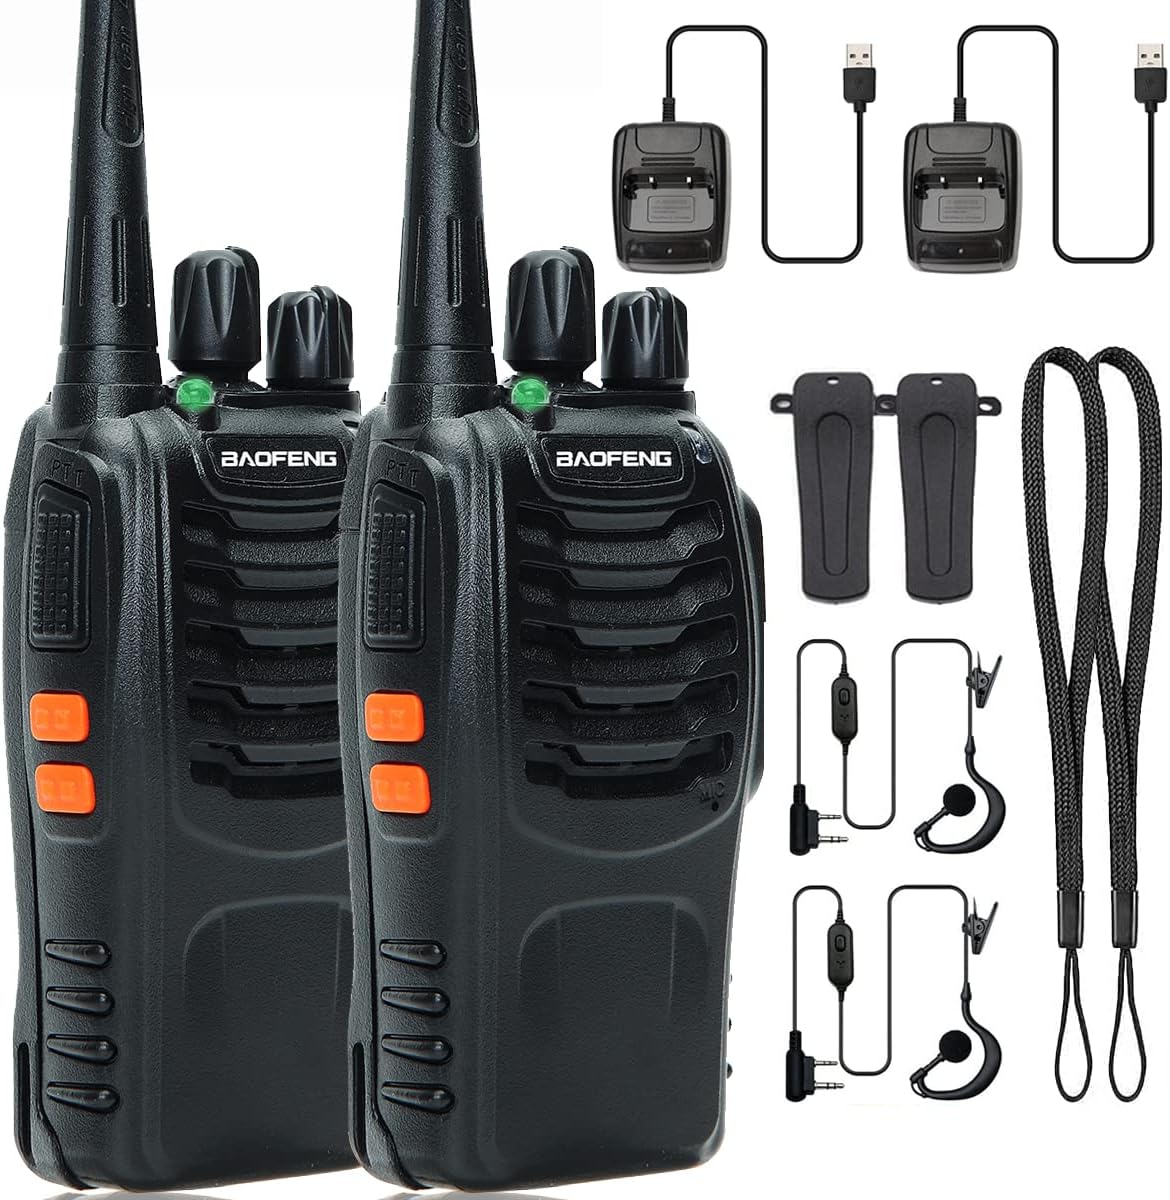 best cheap walkie talkie